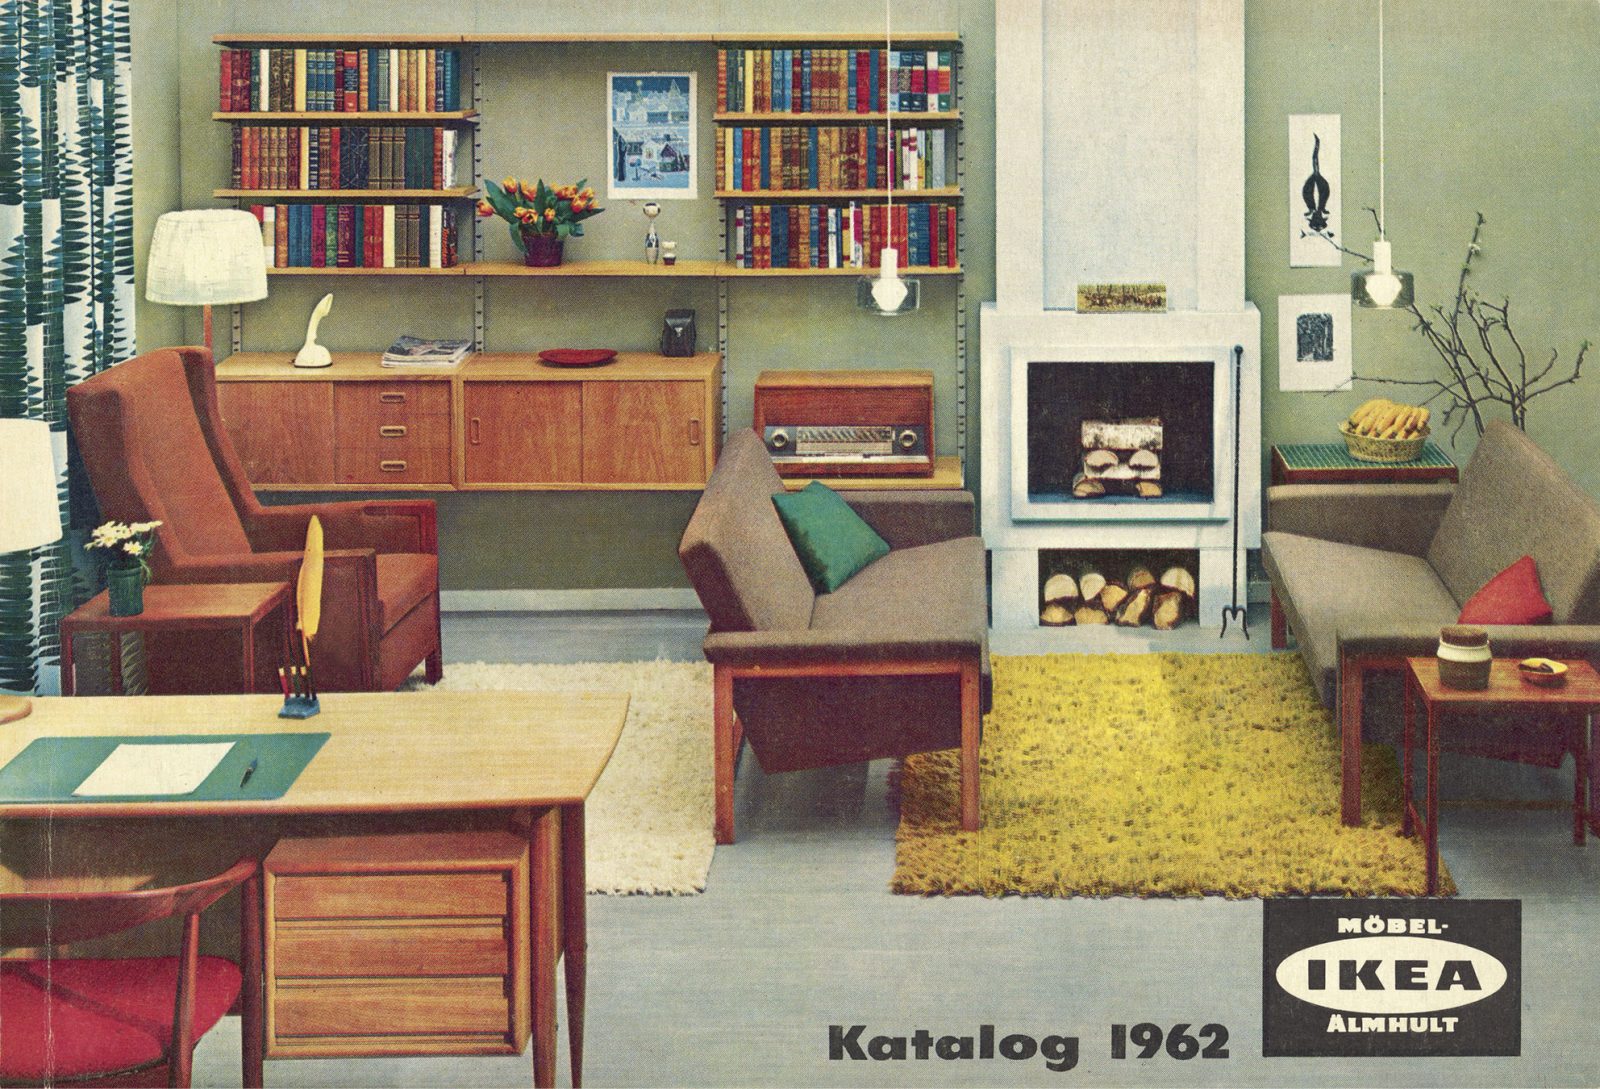 IKEA katalogomslag från 1962 med skrivbord, sittgrupp och eldstad.